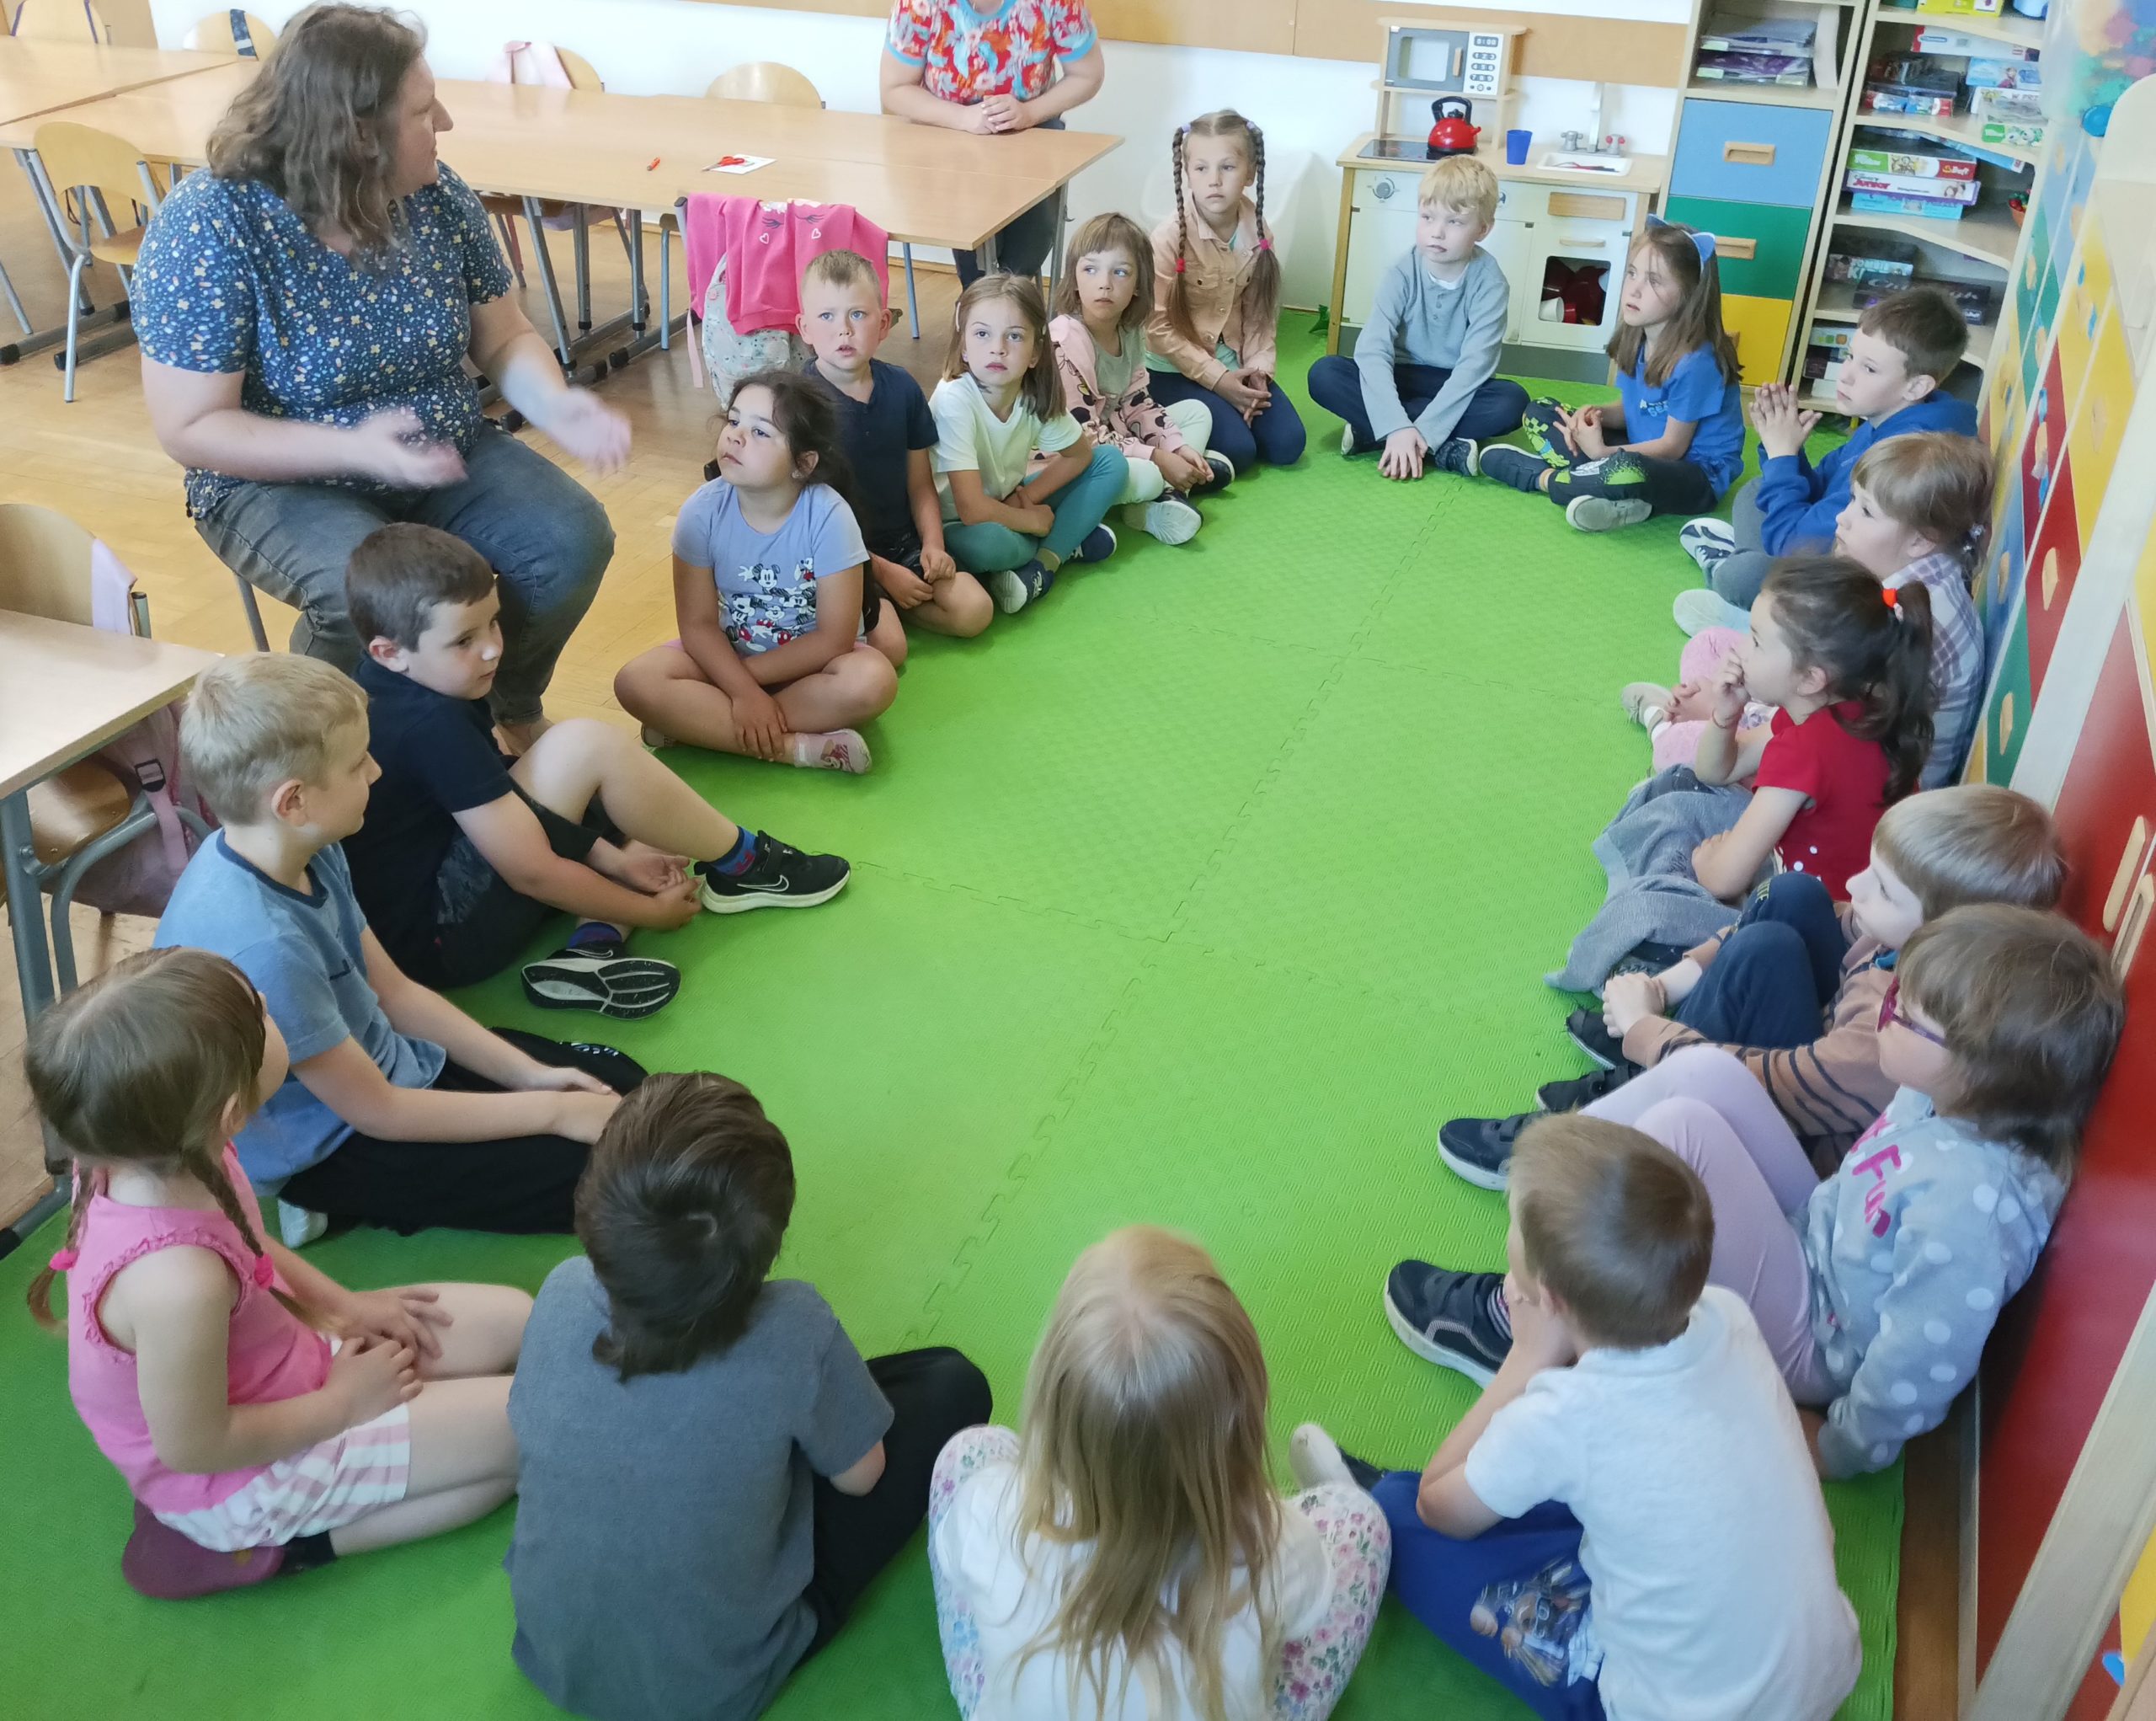 Na podłodze w klasie w kręgu siedzi grupa przedszkolaków i patrzą na kobietę, która siedzi na krześle. W tle wyposażenie szkolnej klasy.